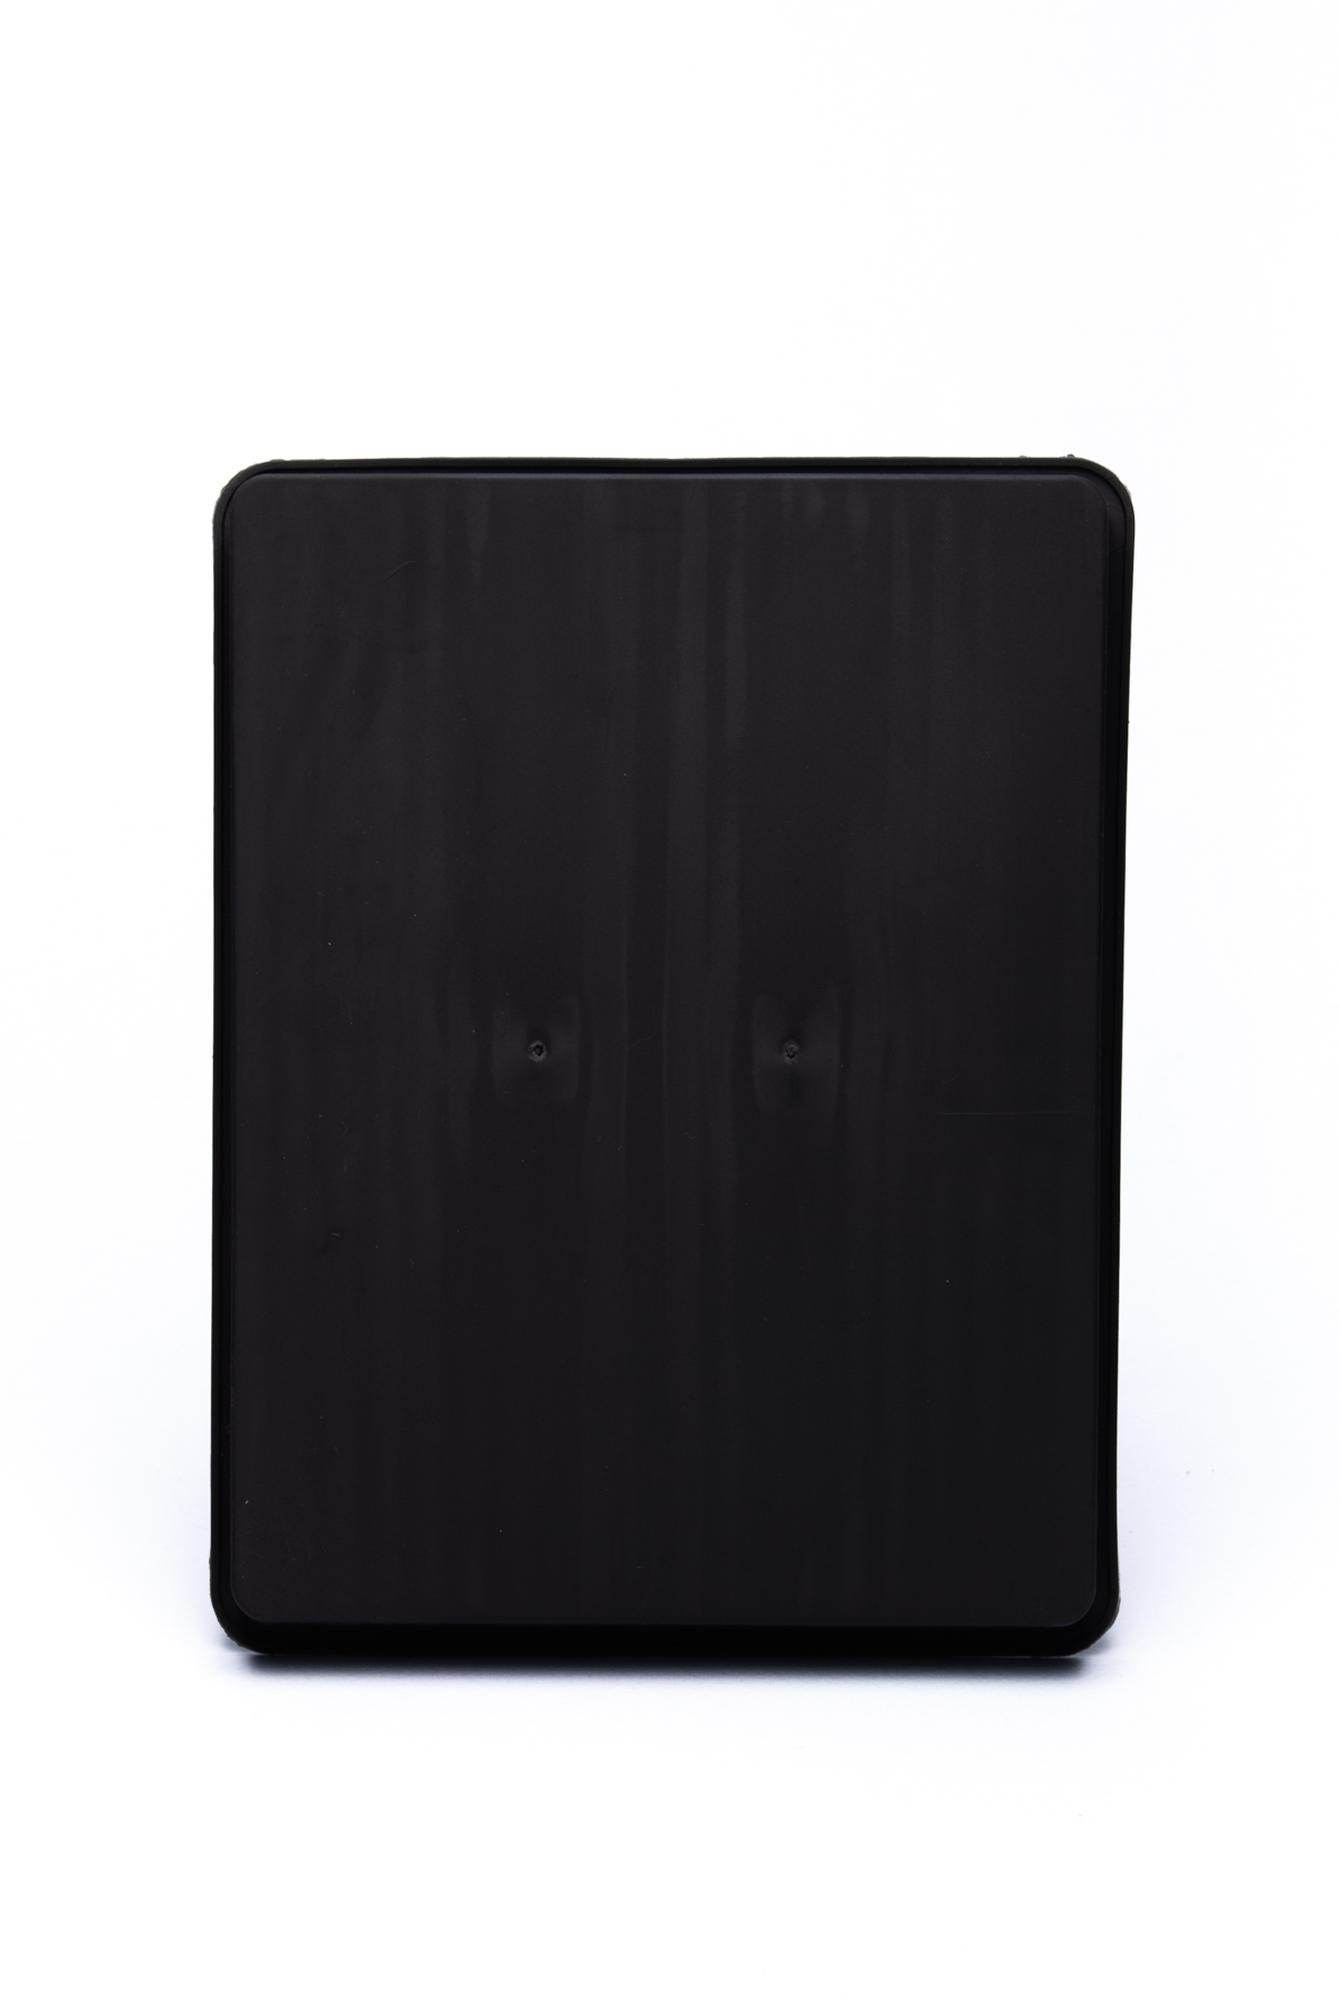  Ecrou Çok Amaçlı Uzun Şeritli Siyah Silikon  Buz Kalıbı 17 x 13 x 1,5 cm